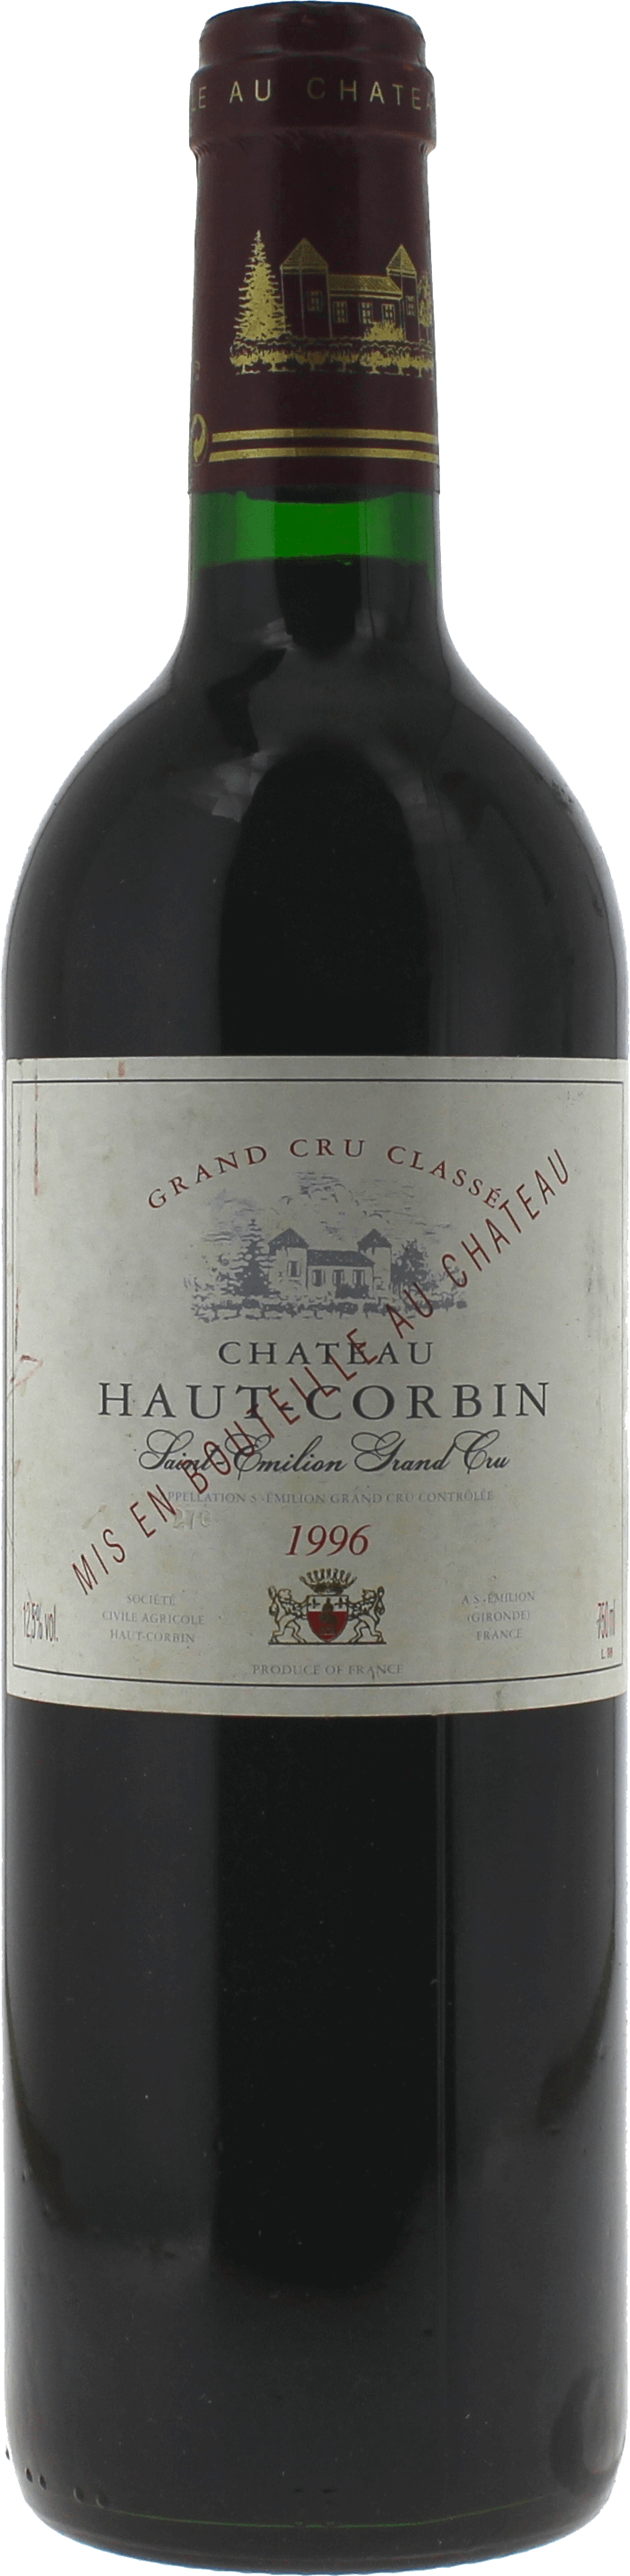 Haut corbin 1996  Saint-Emilion, Bordeaux rouge